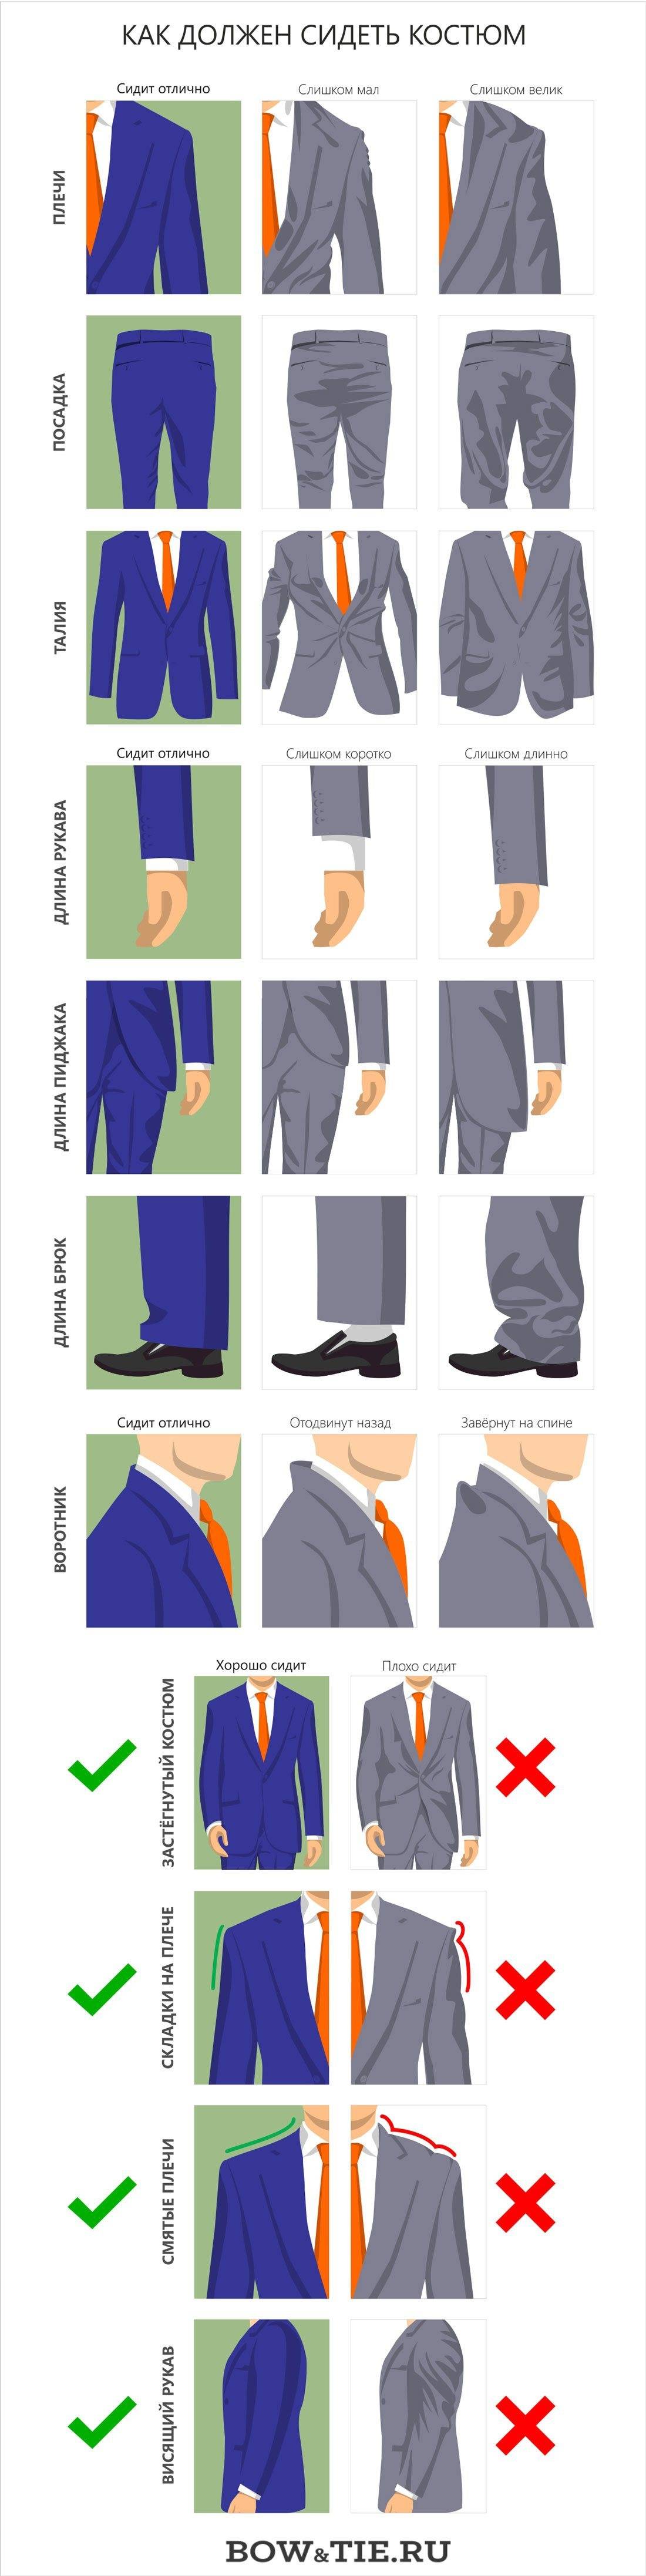 Как выбрать мужской классический костюм – инфографика